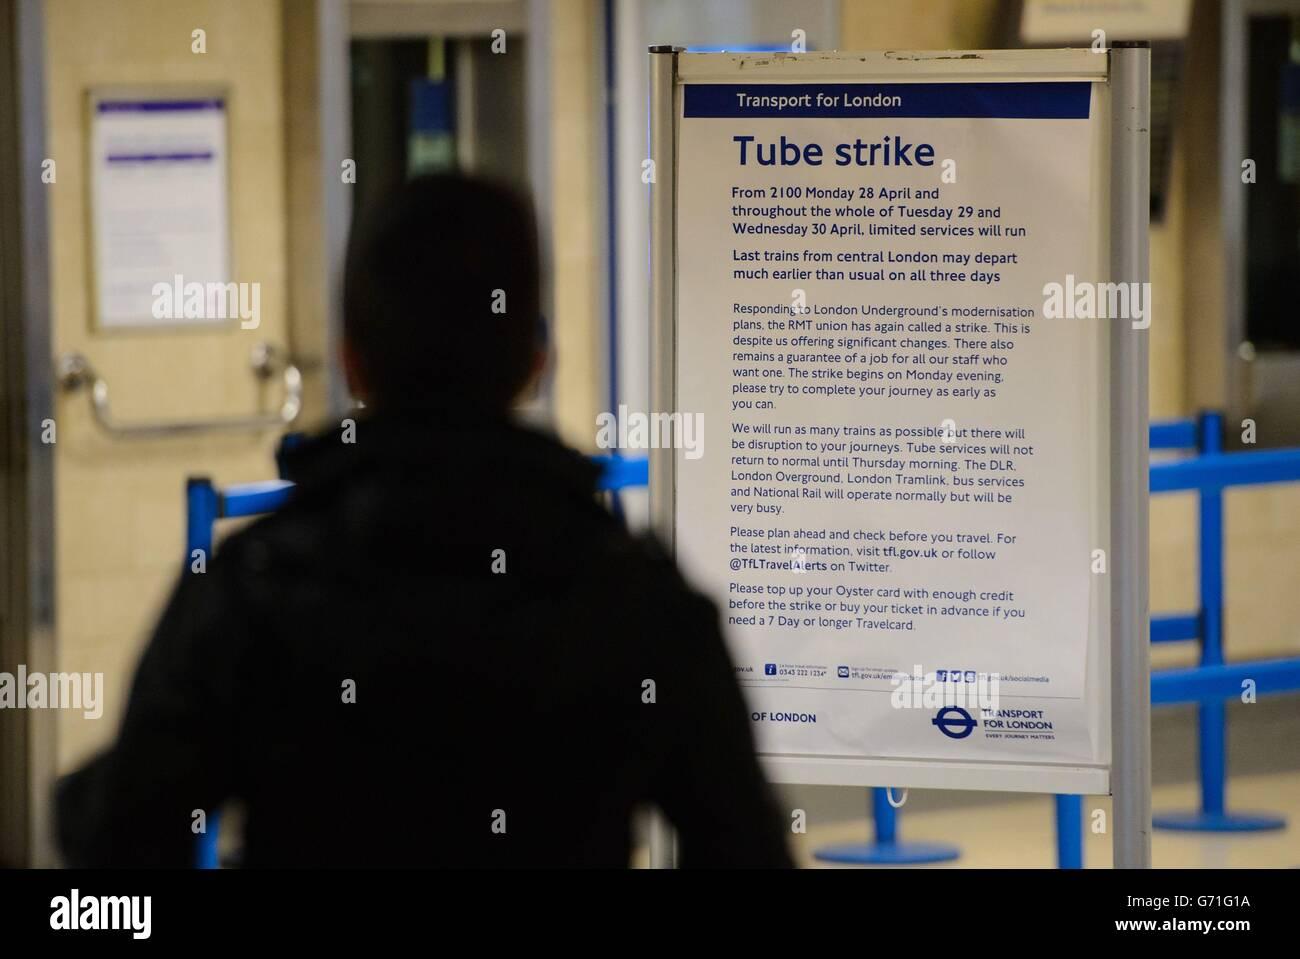 Un passager de la gare de Tower Hill, dans le centre de Londres, passe devant un panneau indiquant le début de 48 heures d'action industrielle par des membres du syndicat RMT touchant le métro de Londres dans une rangée à la suite des fermetures de la billetterie. Banque D'Images